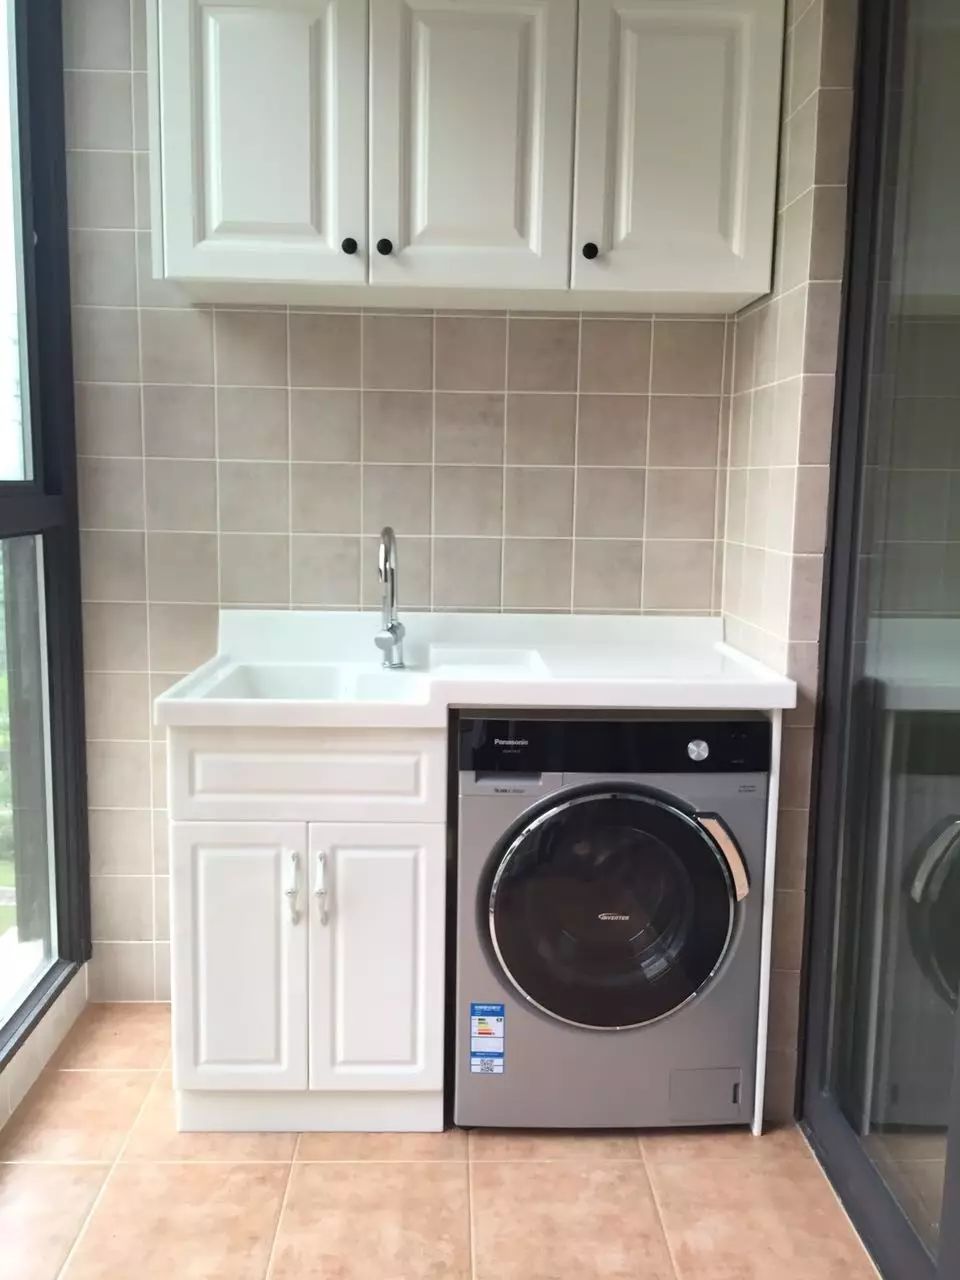 1,滚筒洗衣机 常见尺寸:高860mm,宽595mm,厚460-600mm